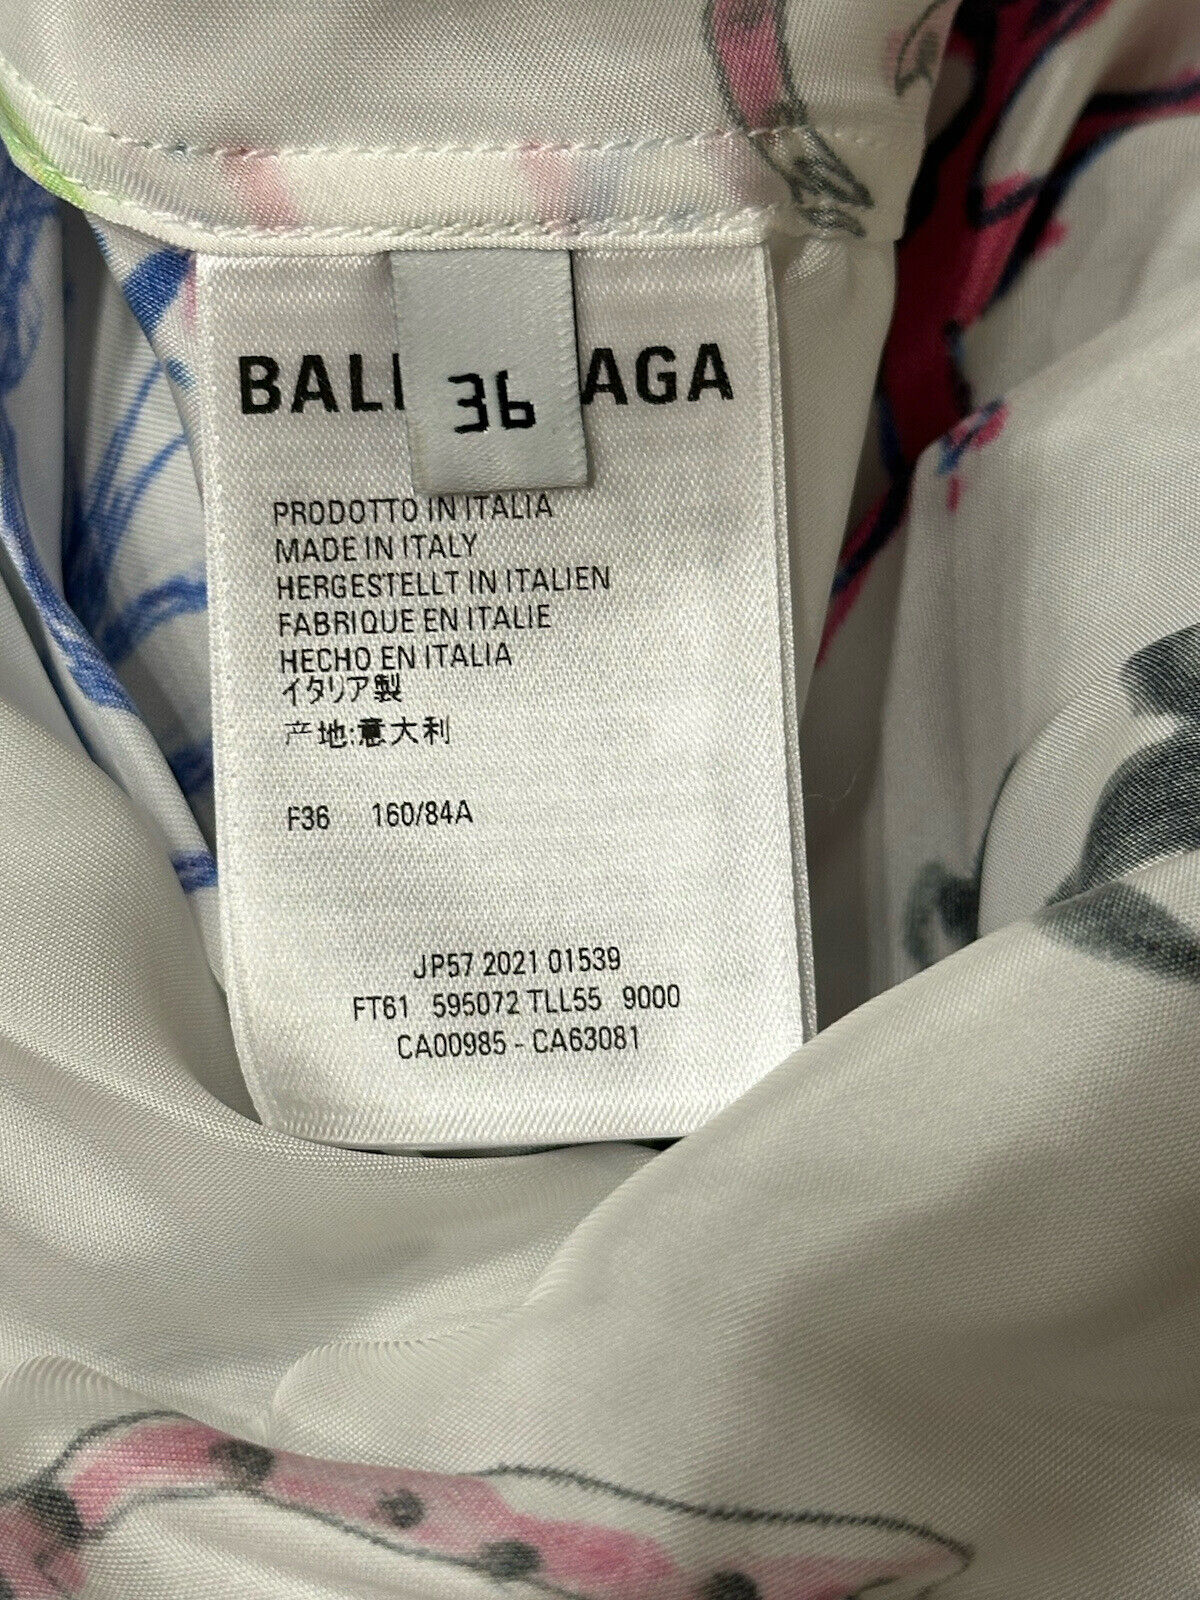 СЗТ 1590 долларов США Balenciaga Женская блузка Artist Doodle Graphic 4 США (36 евро) Италия